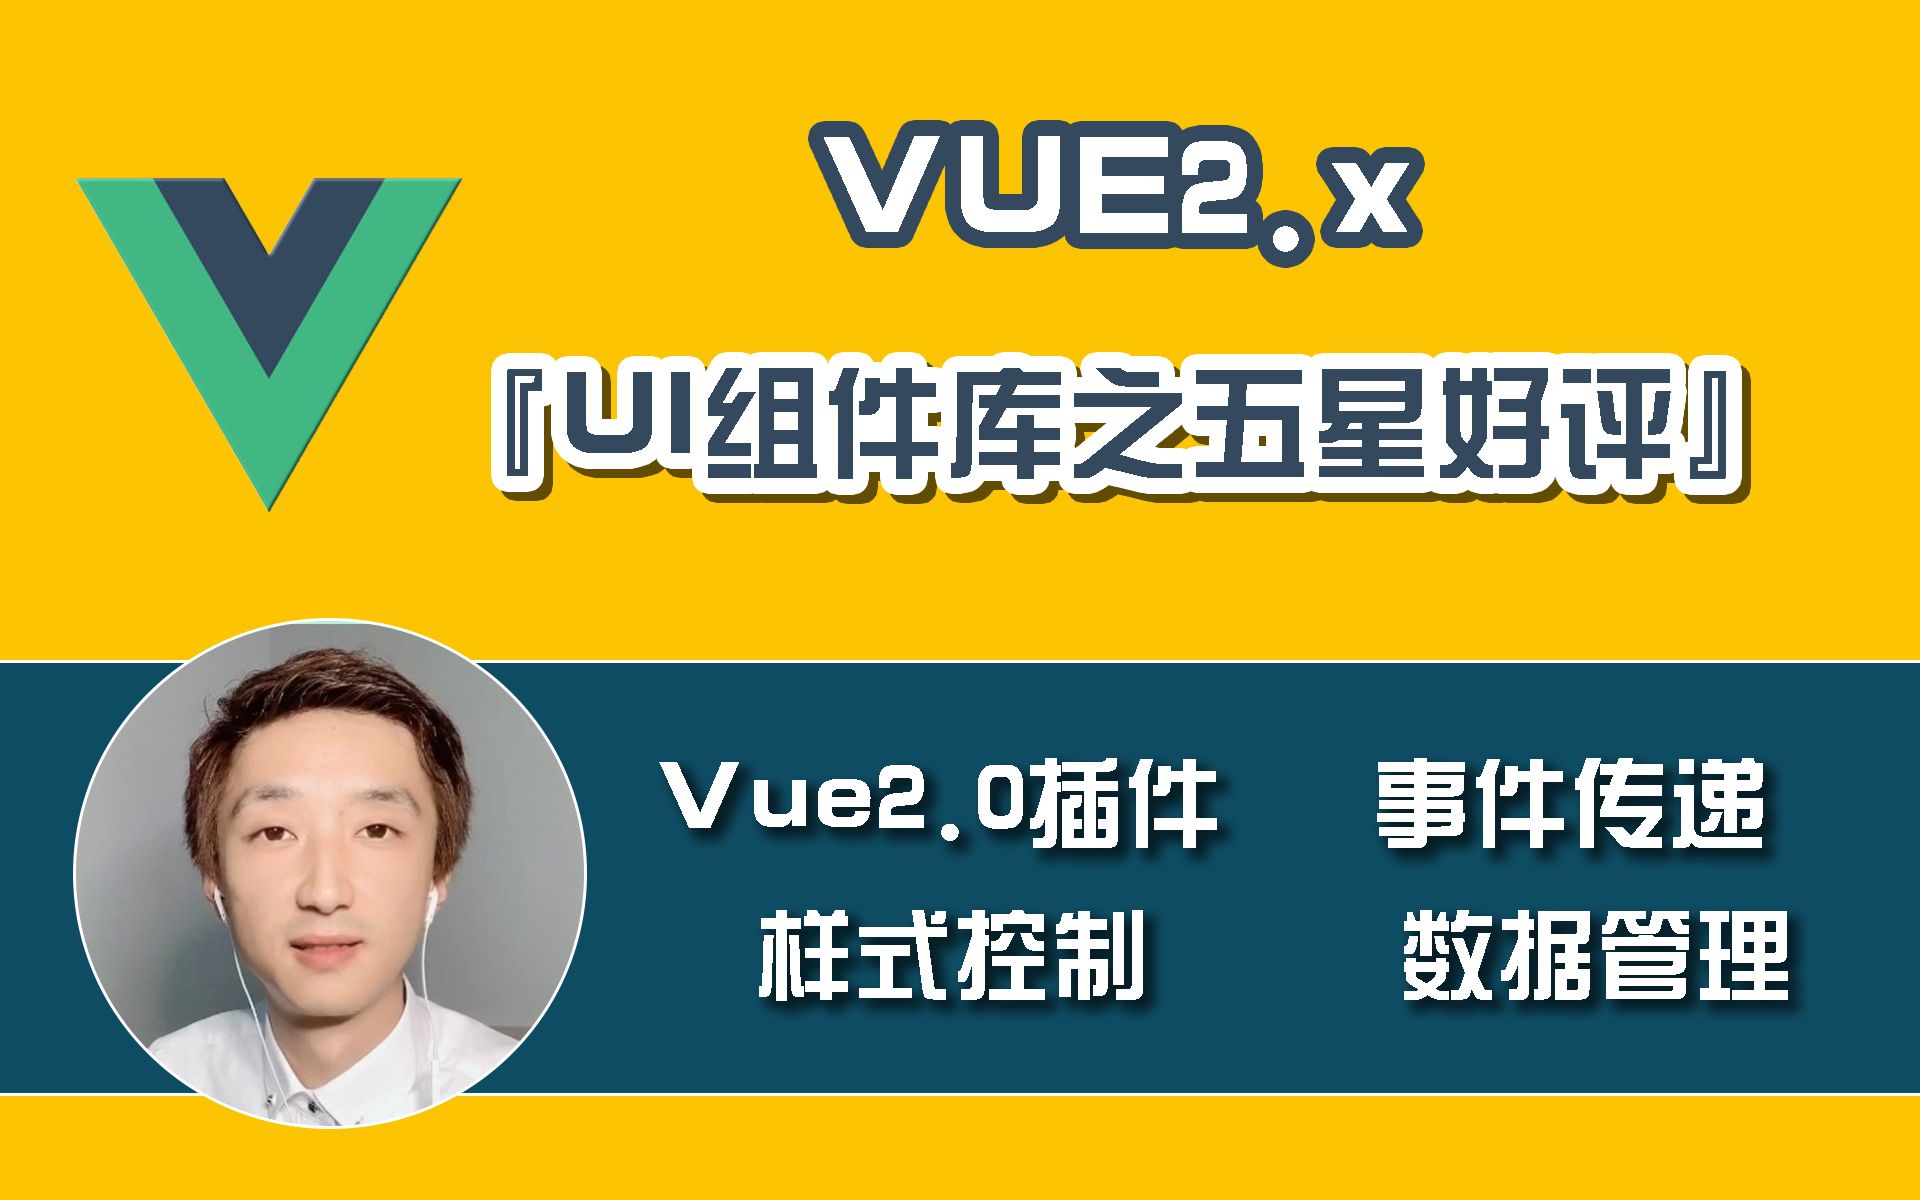 【前端开发】Vue2.x『UI组件库』之『五星好评』【业务提升必备】